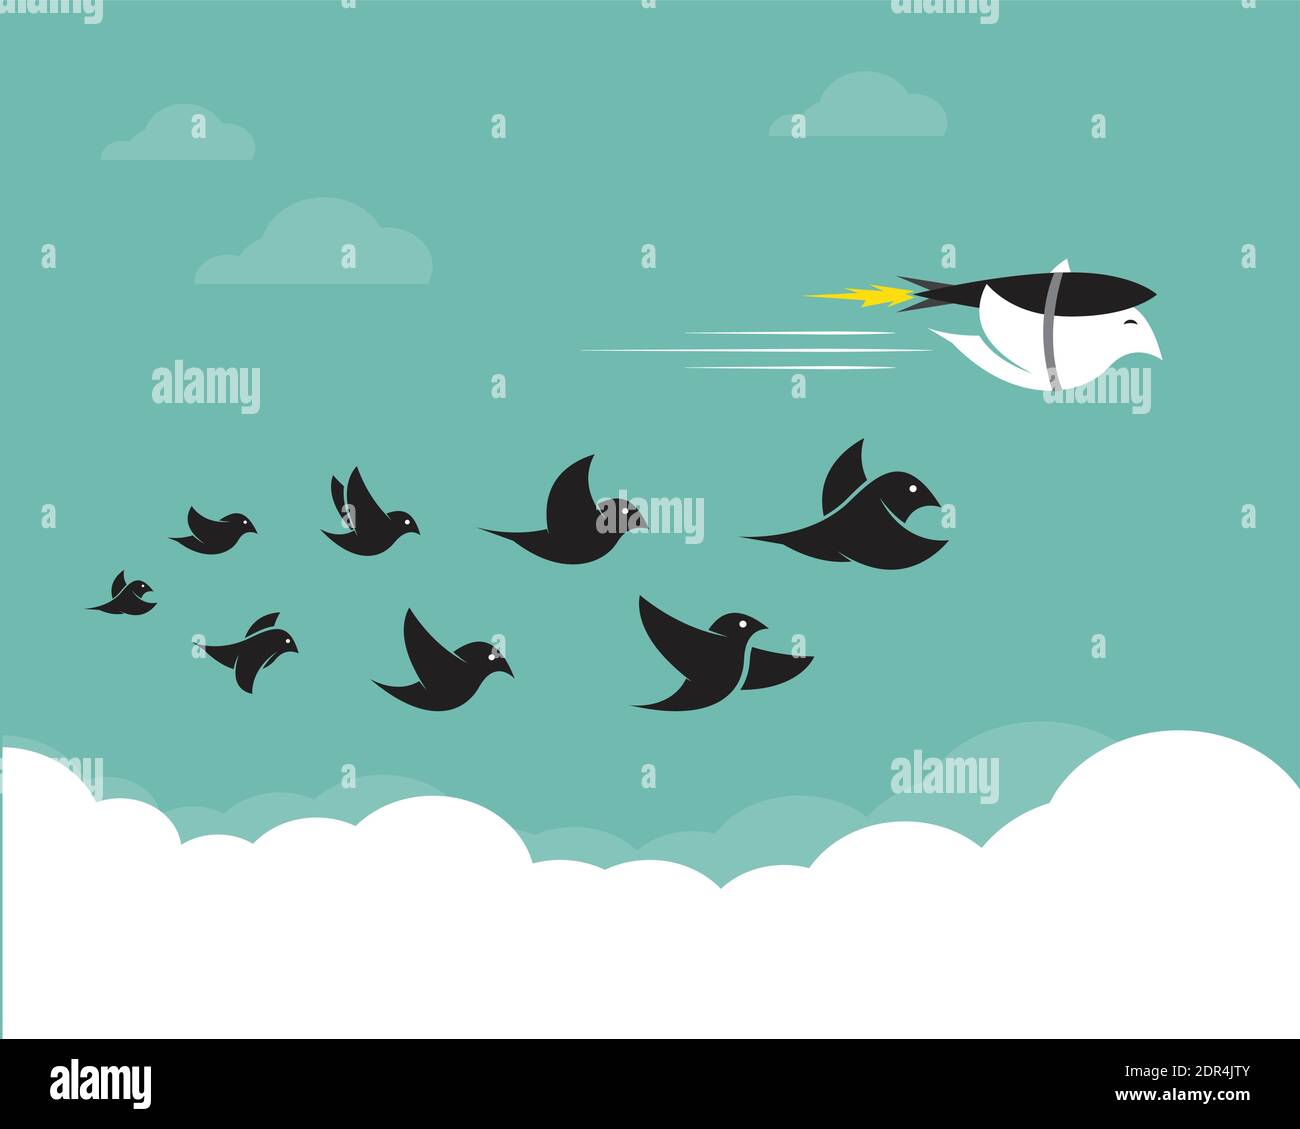 Vektorbilder von Vögeln und Raketen am Himmel. Konzept kreativ. Leicht editierbare Vektorgrafik mit Ebenen. Wilde Tiere. Stock Vektor